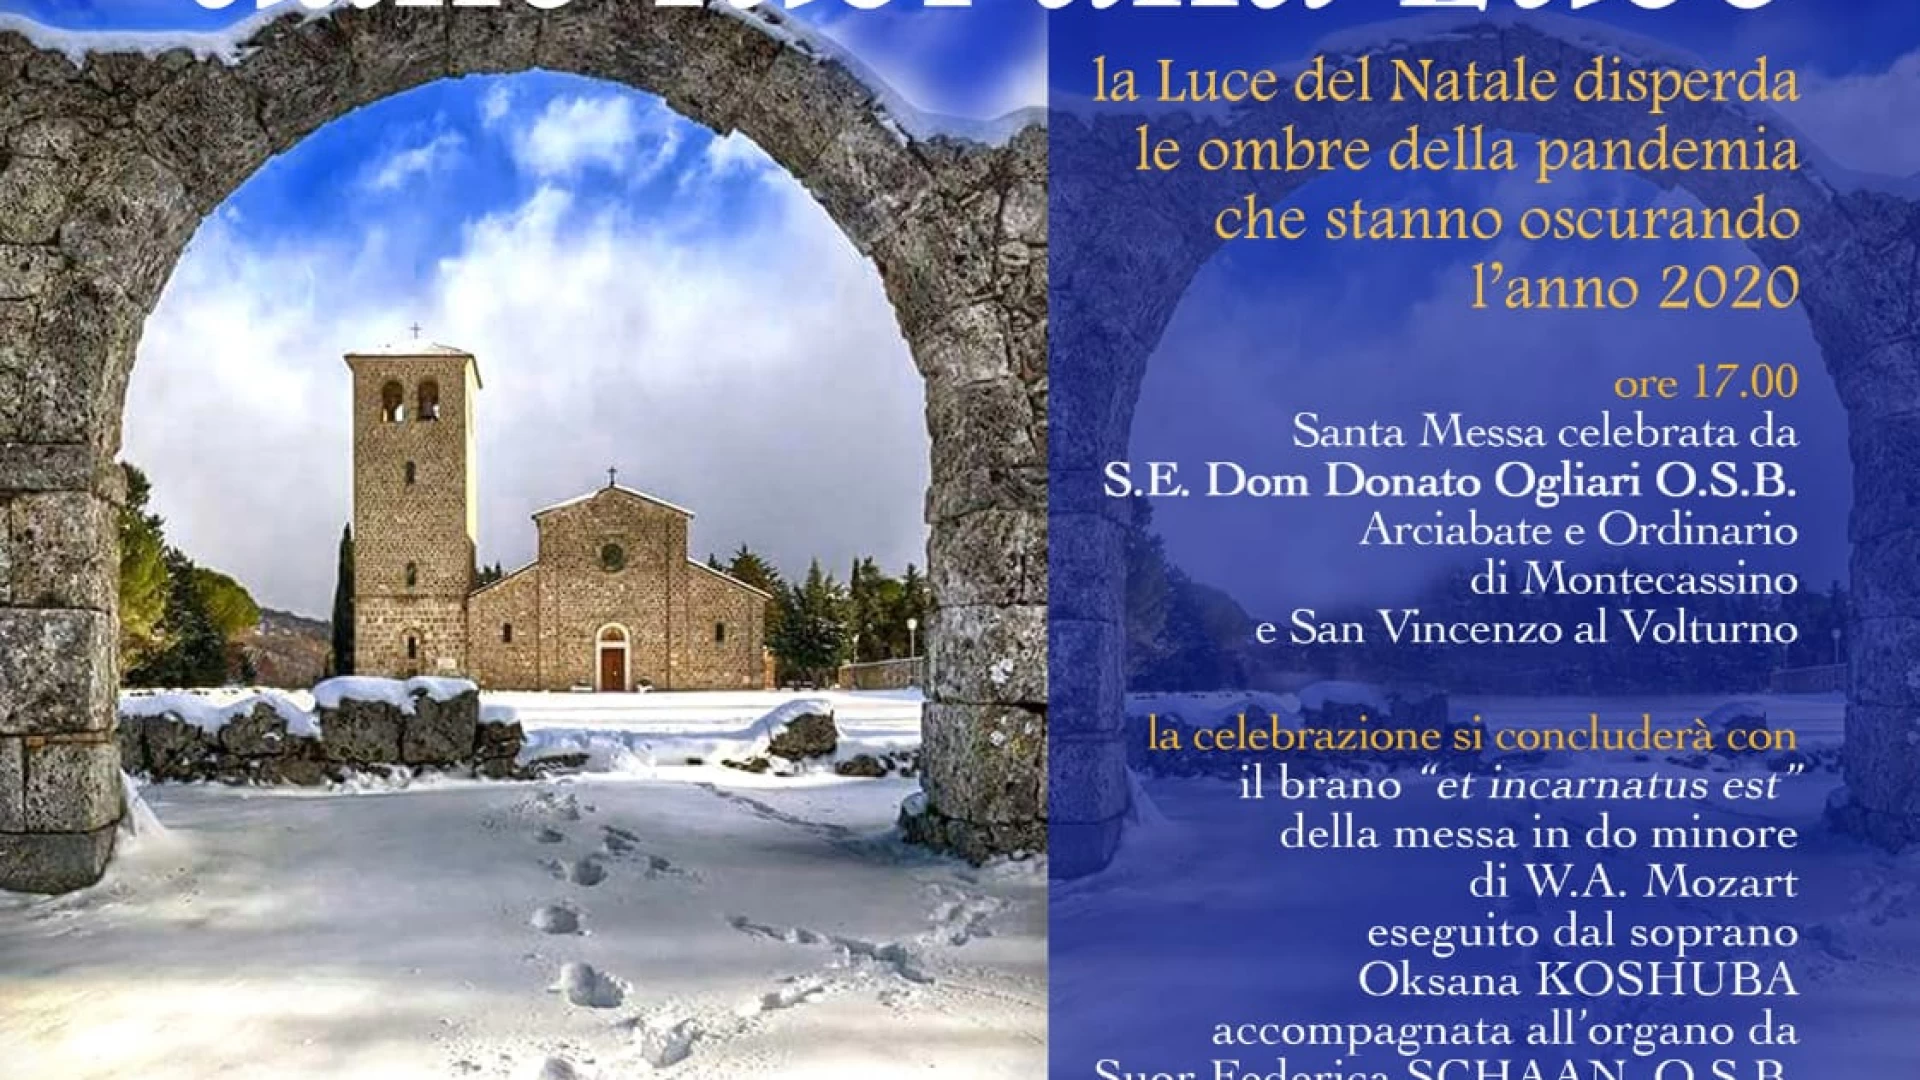 Dalle Luci alla Luce, sabato 5 dicembre l’accensione dell’albero di Natale presso l’Abbazia di San Vincenzo.